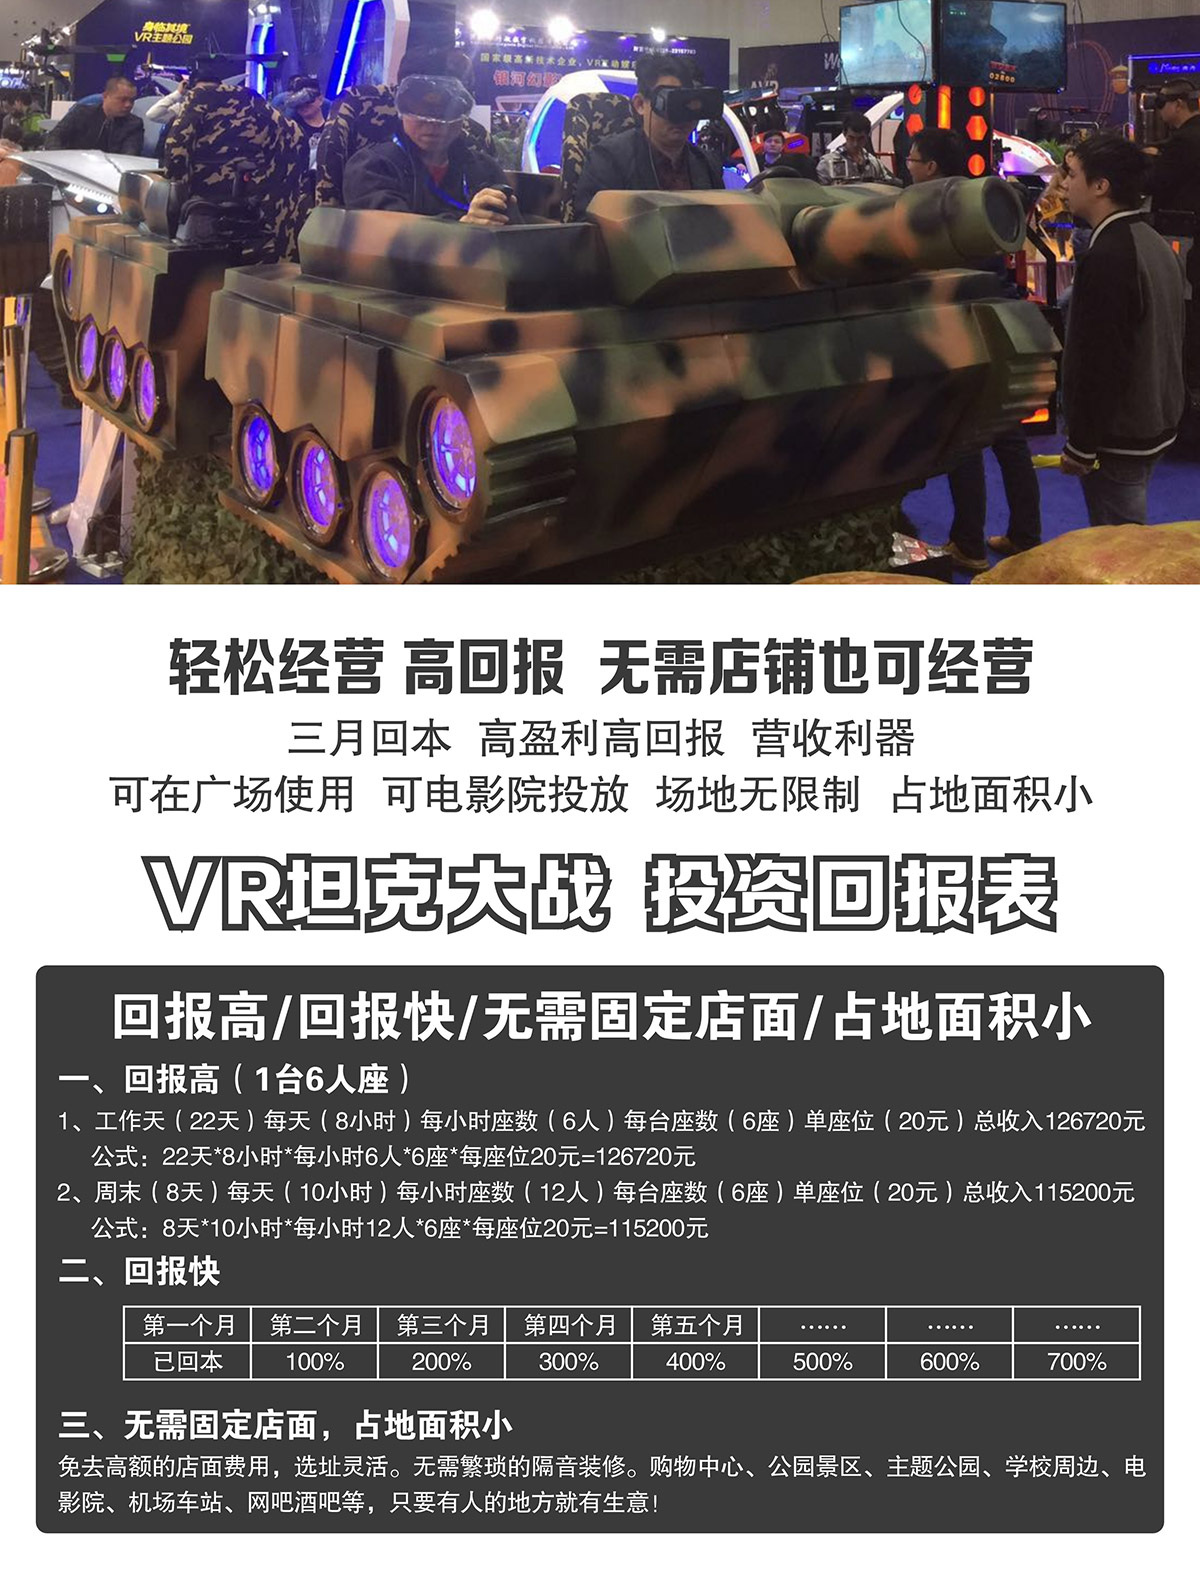 04-VR坦克大戰投資回報表.jpg